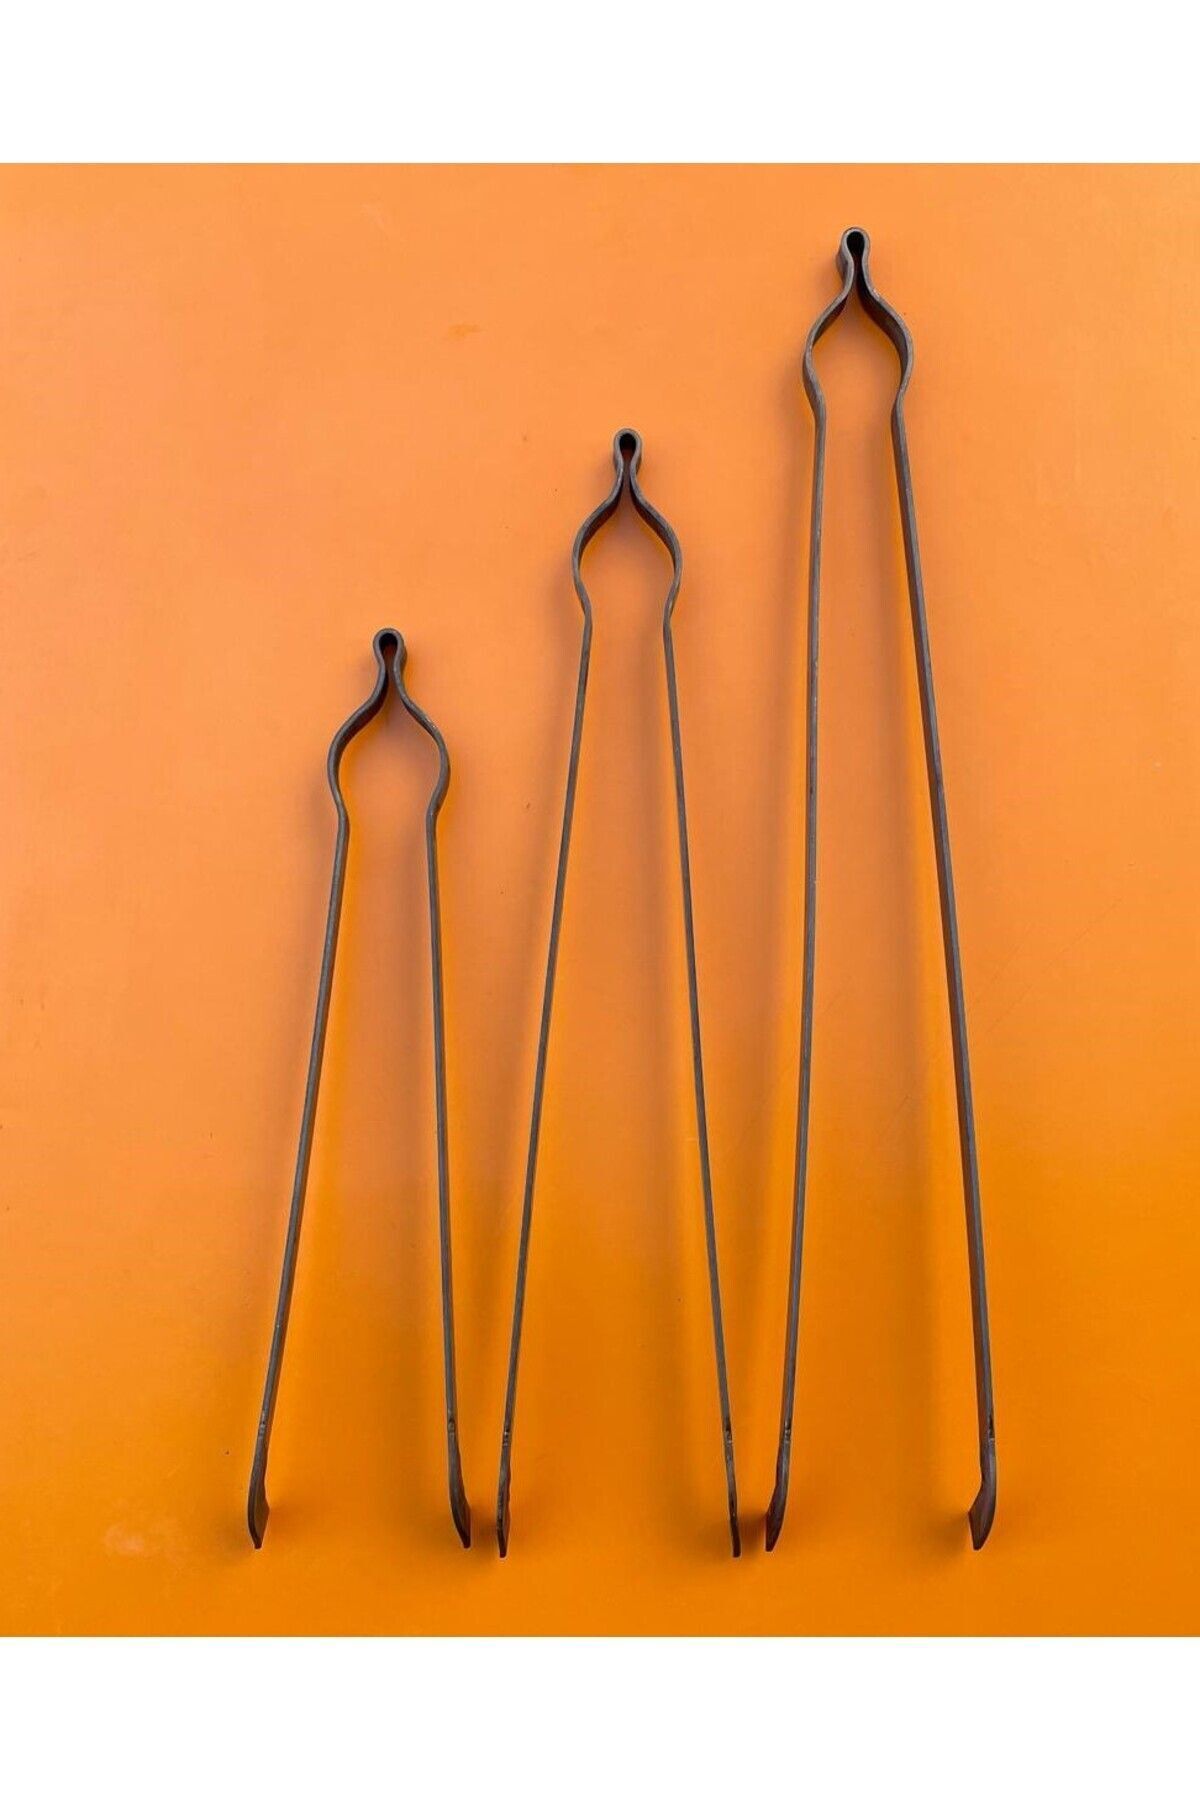 sobapark Demir Maşa Seti Ateş Maşası Köz Maşası Odun Kömür Kestane Mangal Maşası 3'lü Maşa Seti 40-50-60 cm